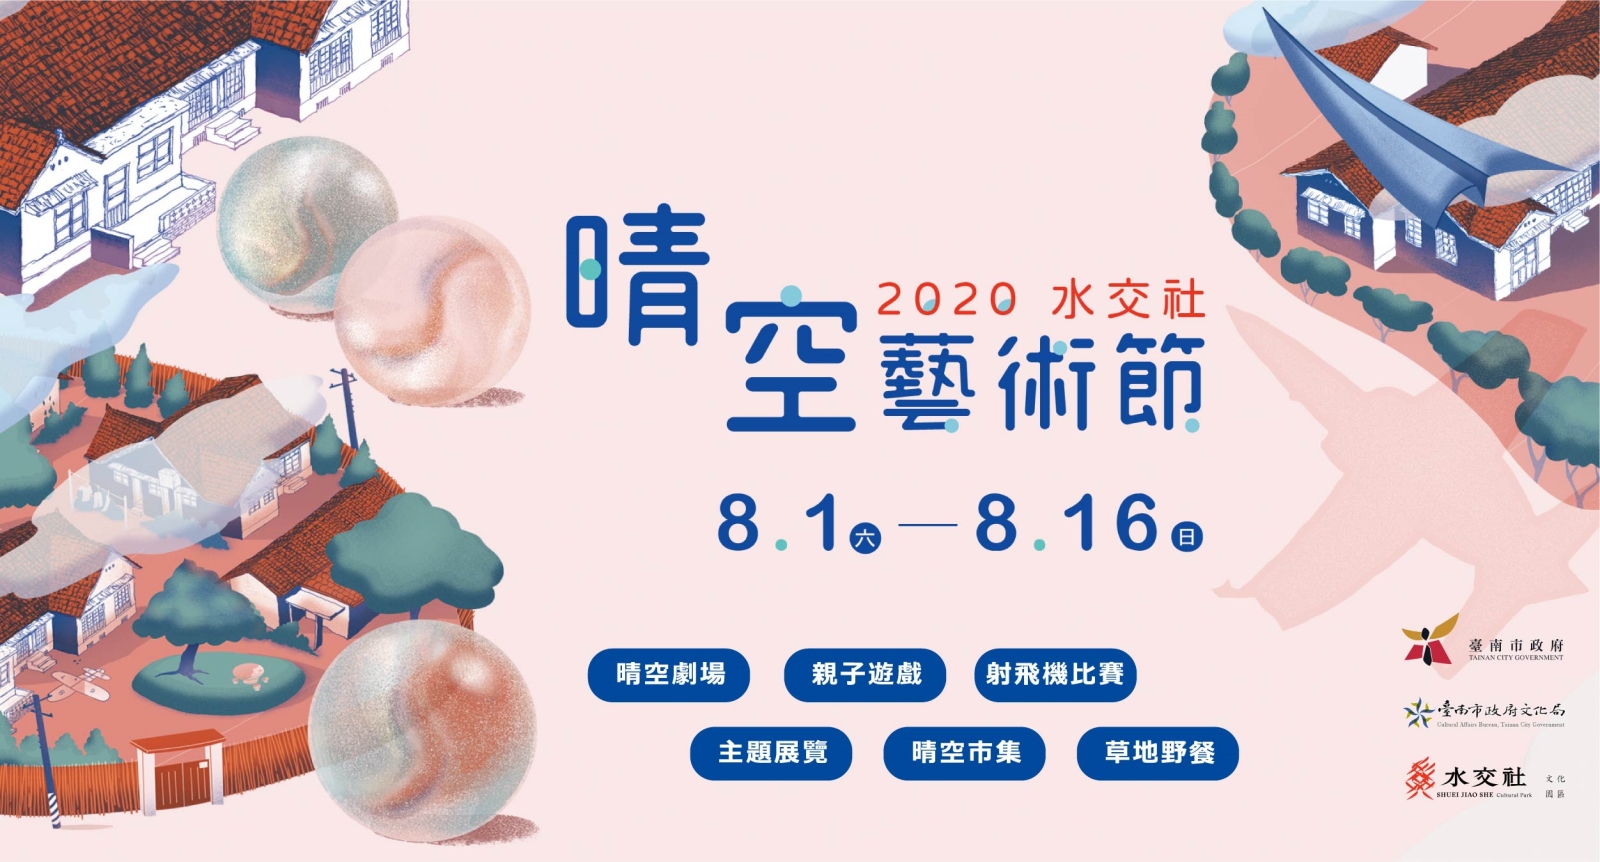 2020水交社晴空藝術節